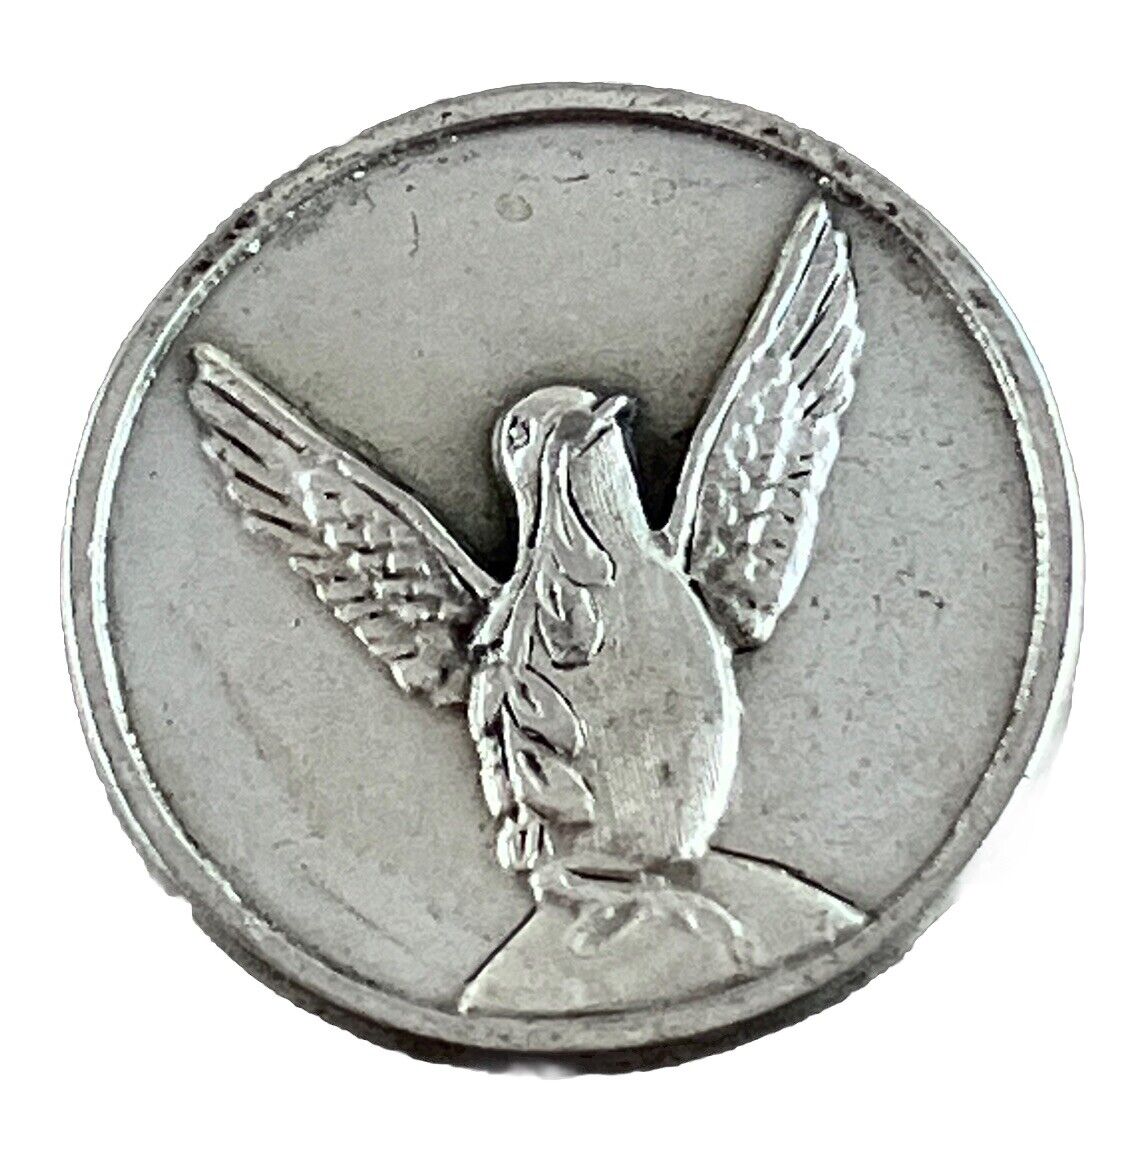 Vintage Catholic Holy Spirit Pocket Token Silver Tone Religious Medal